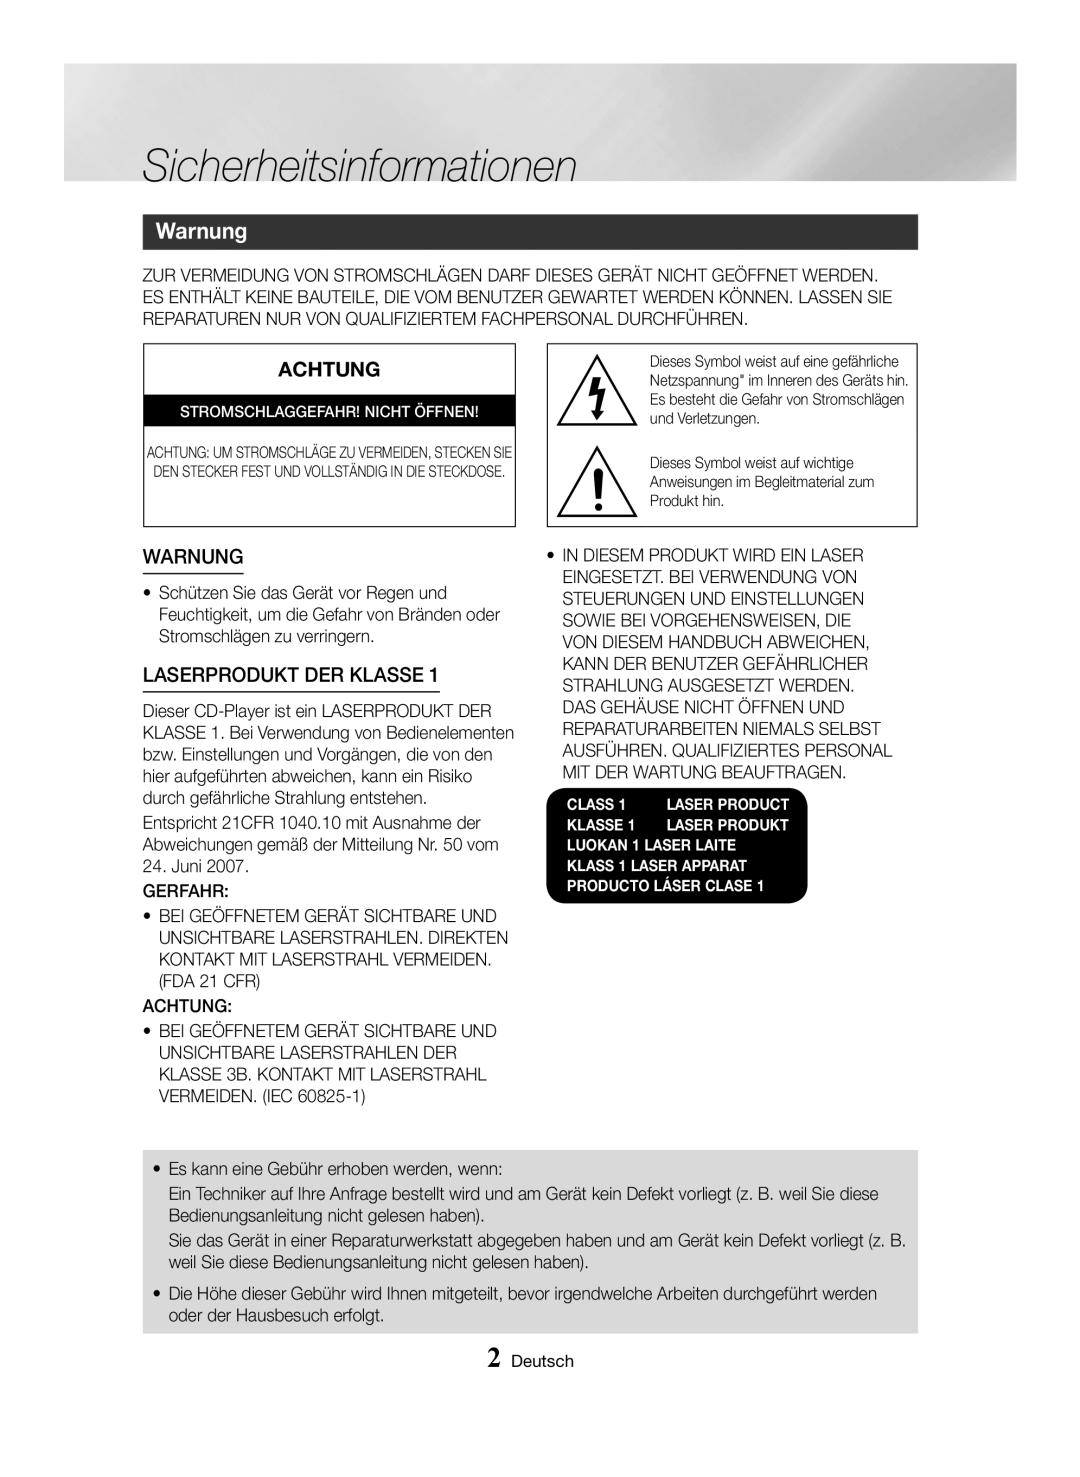 Samsung MX-HS8000/EN, MX-HS8000/ZF manual Sicherheitsinformationen, Warnung, Achtung, Laserprodukt Der Klasse 